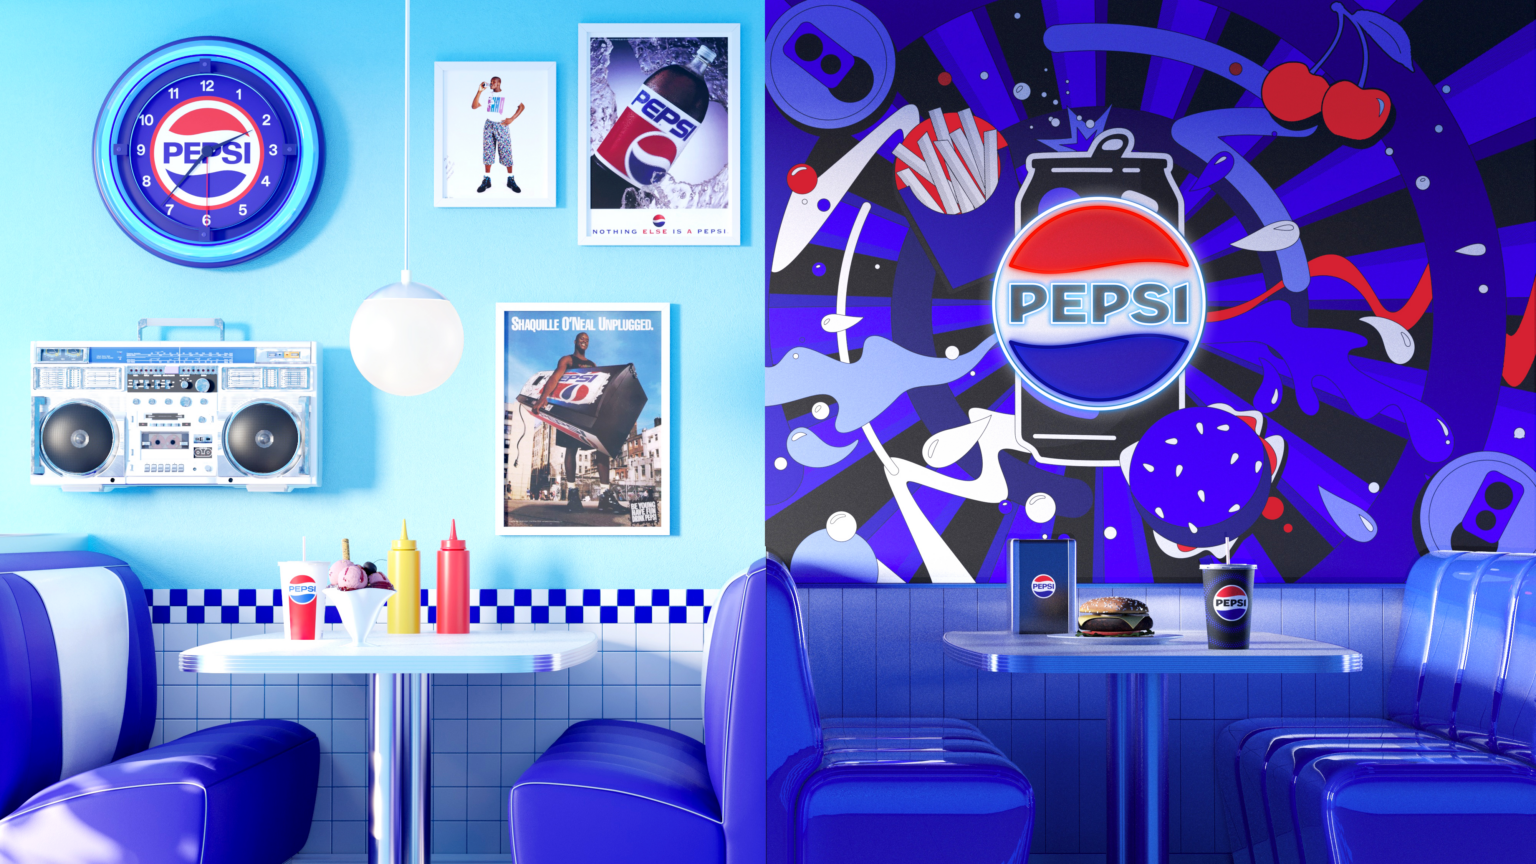 Pepsi-Diner-Interior-Render-8_22-169-1536x864.png